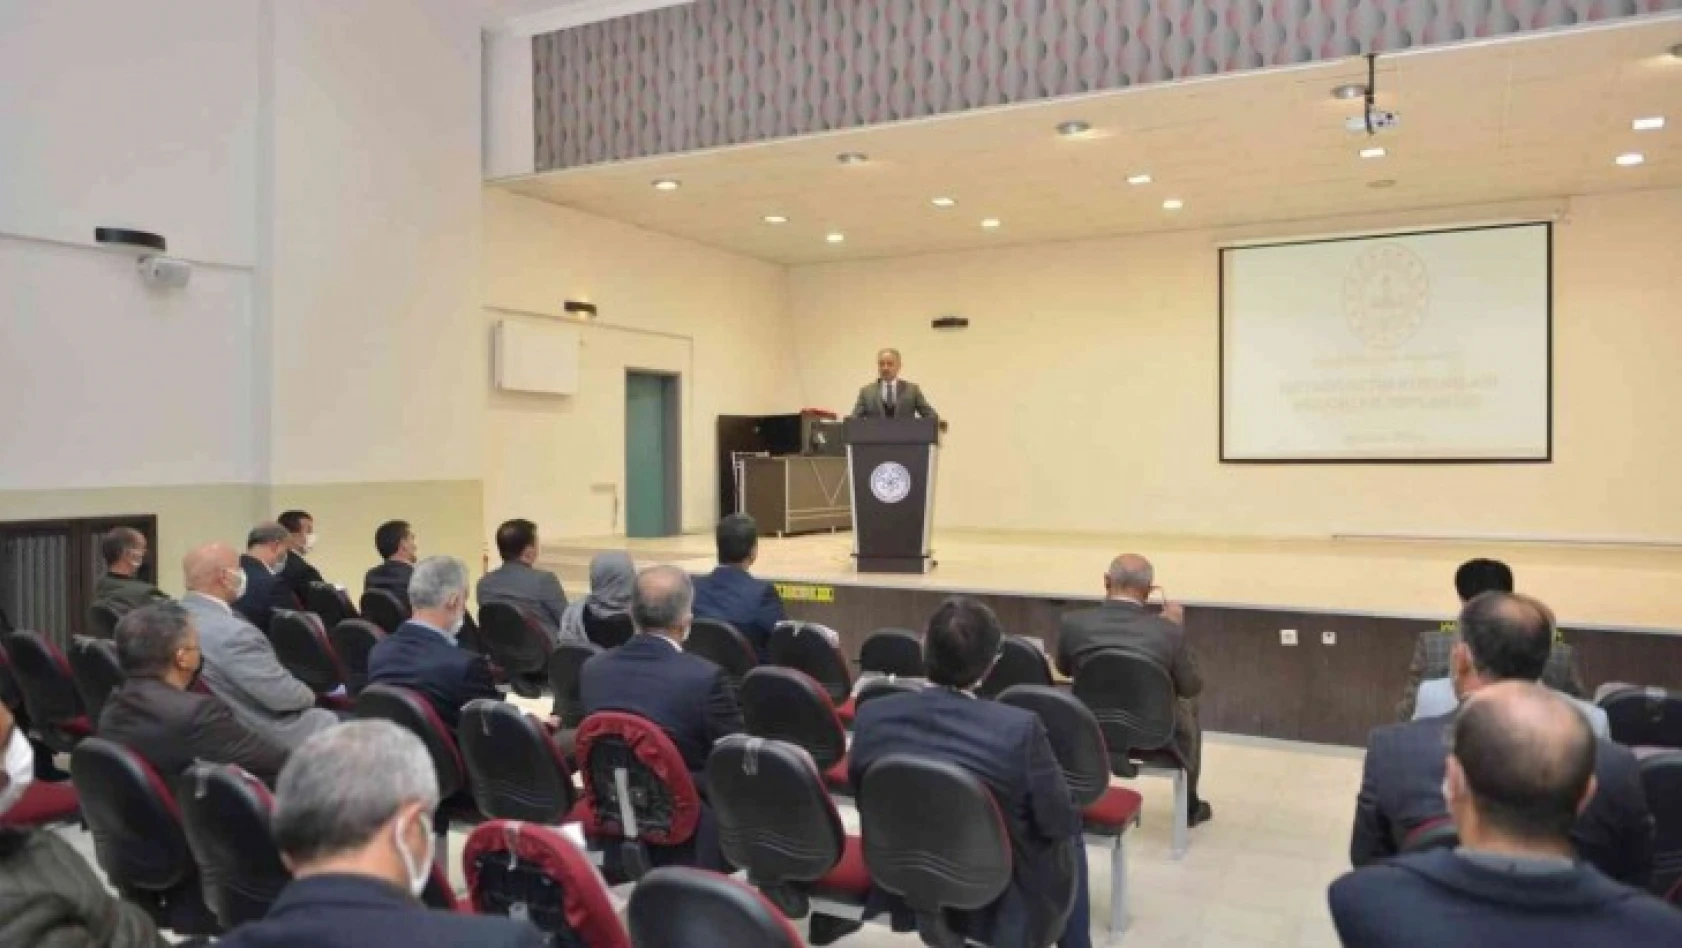 Elazığ'da eğitim gündemi değerlendirme toplantısı yapıldı